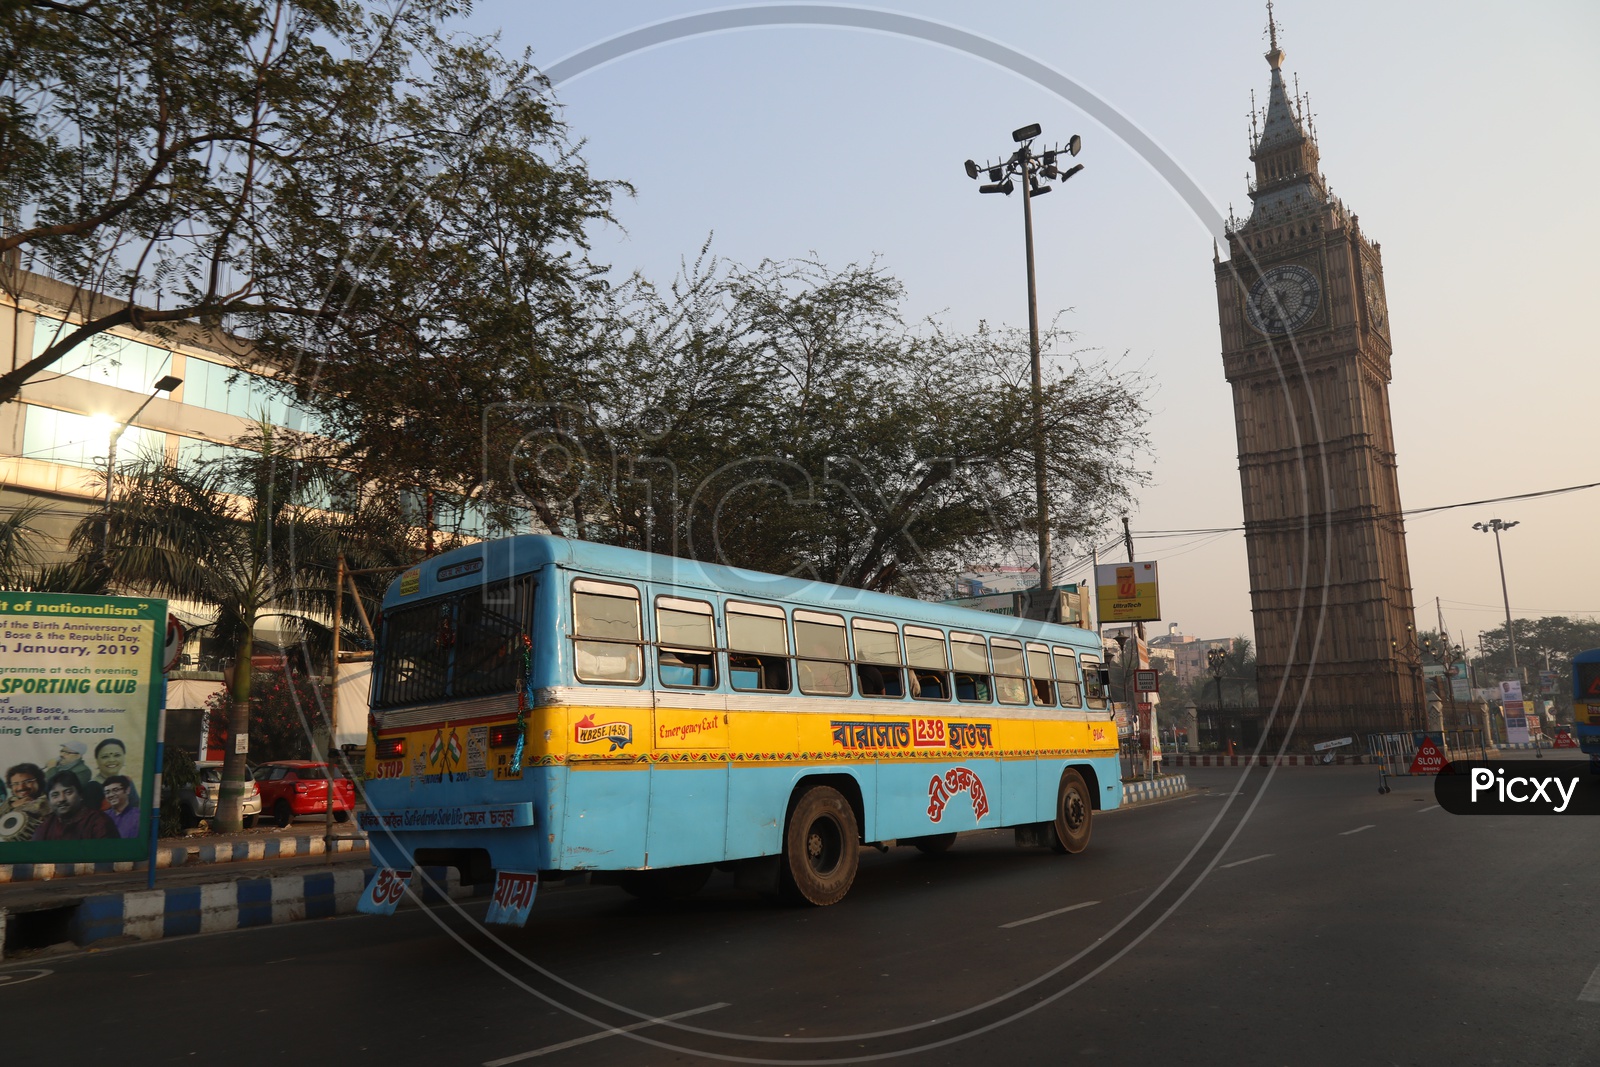 Kolkata Local Buses On the roads Of Kolkata